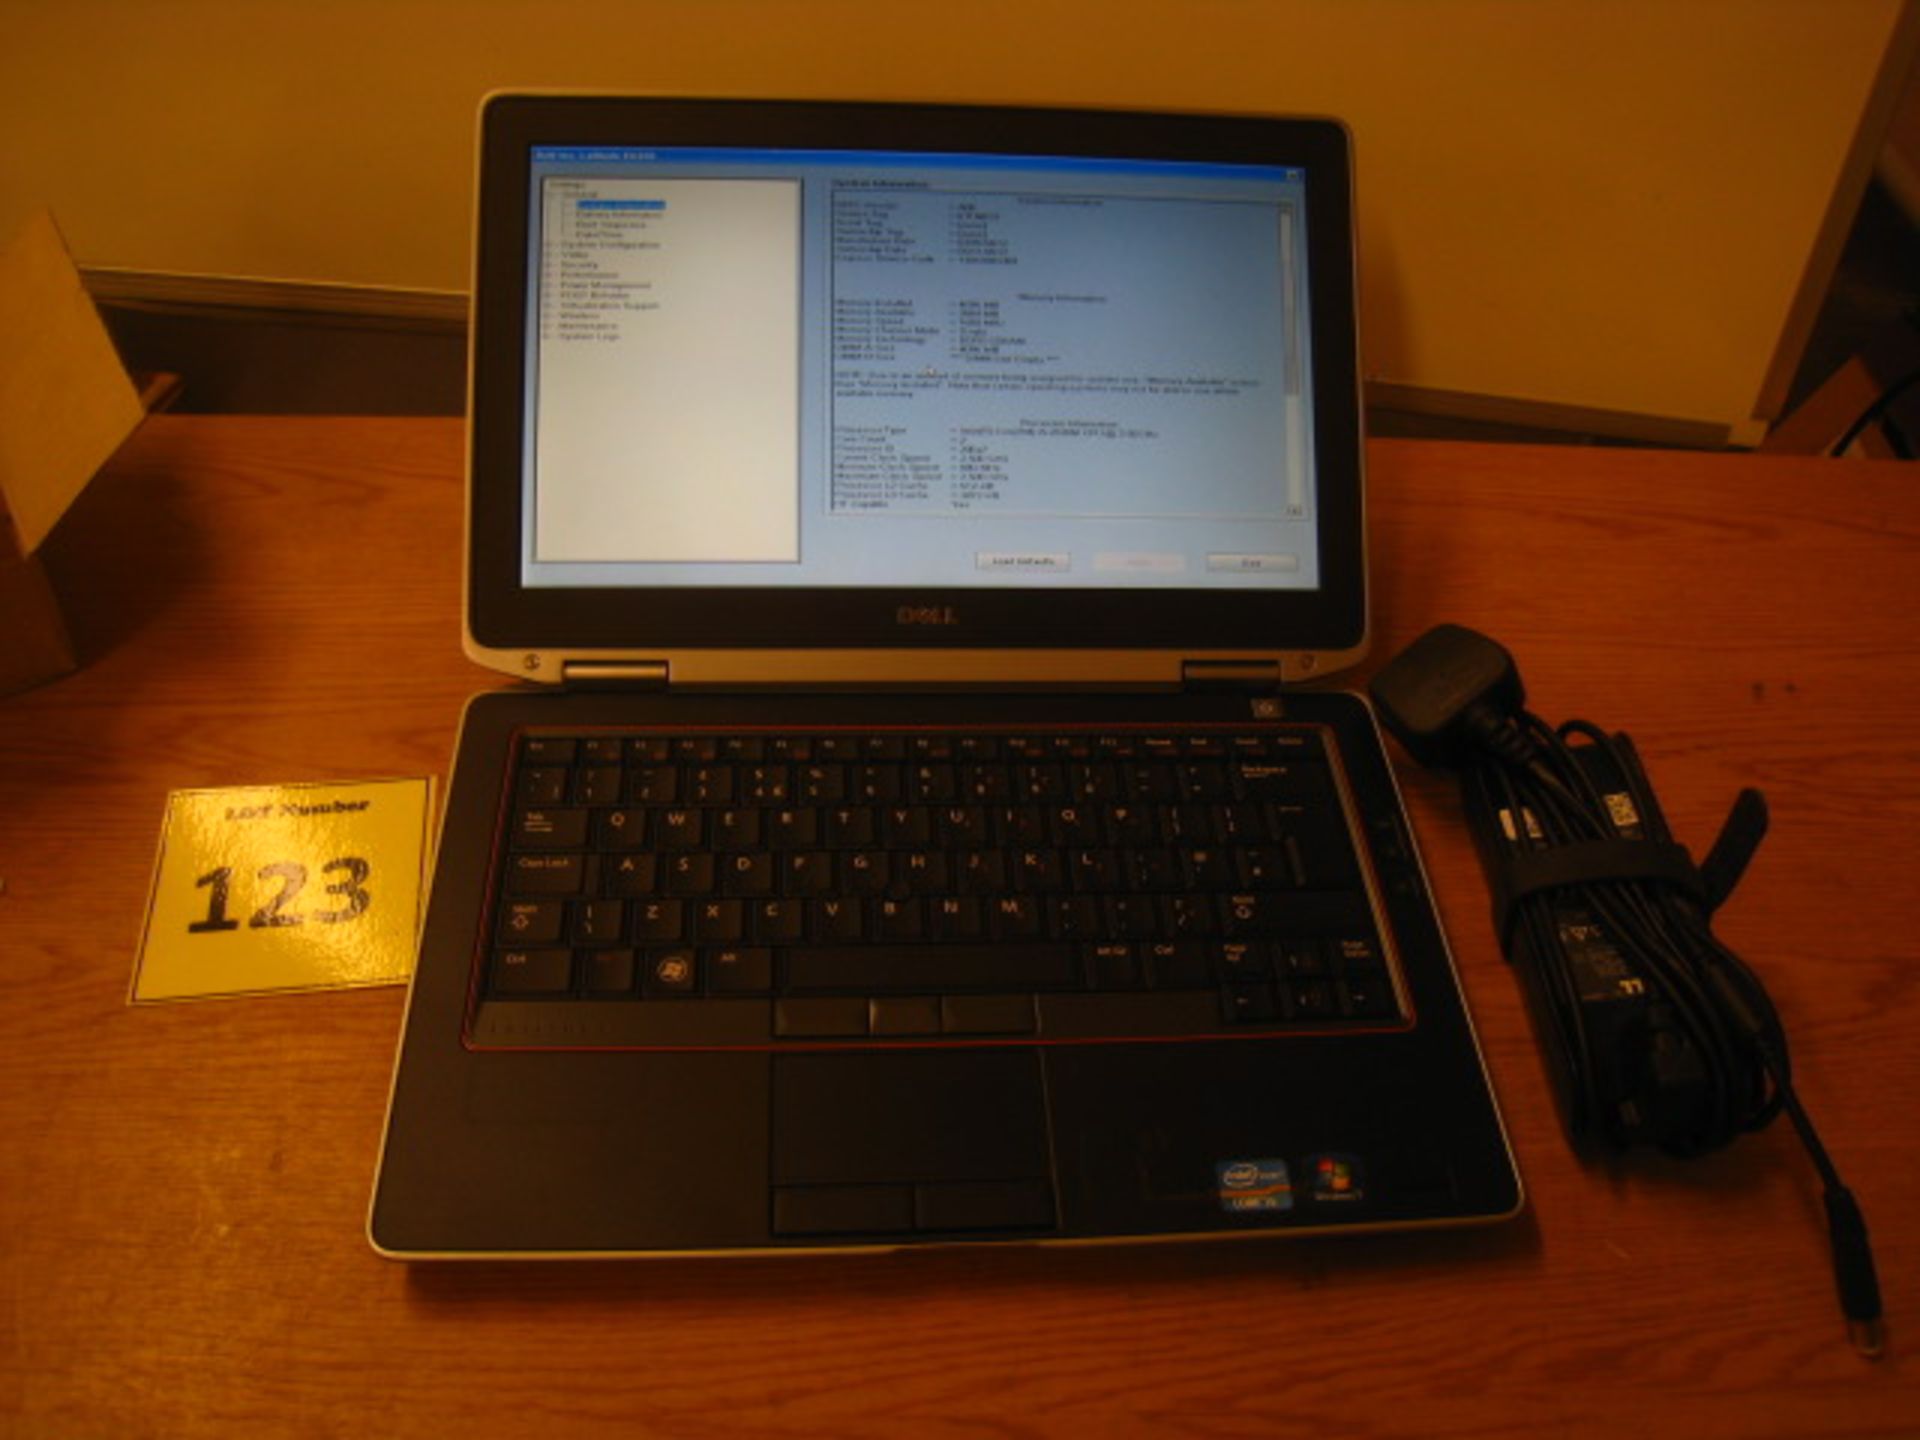 DELL LATITUDE E6320 LAPTOP. CORE i5 2.5GHZ PROCESSOR, 4GB RAM, 320GB HDD, DVDRW WITH PSU. WINDOWS